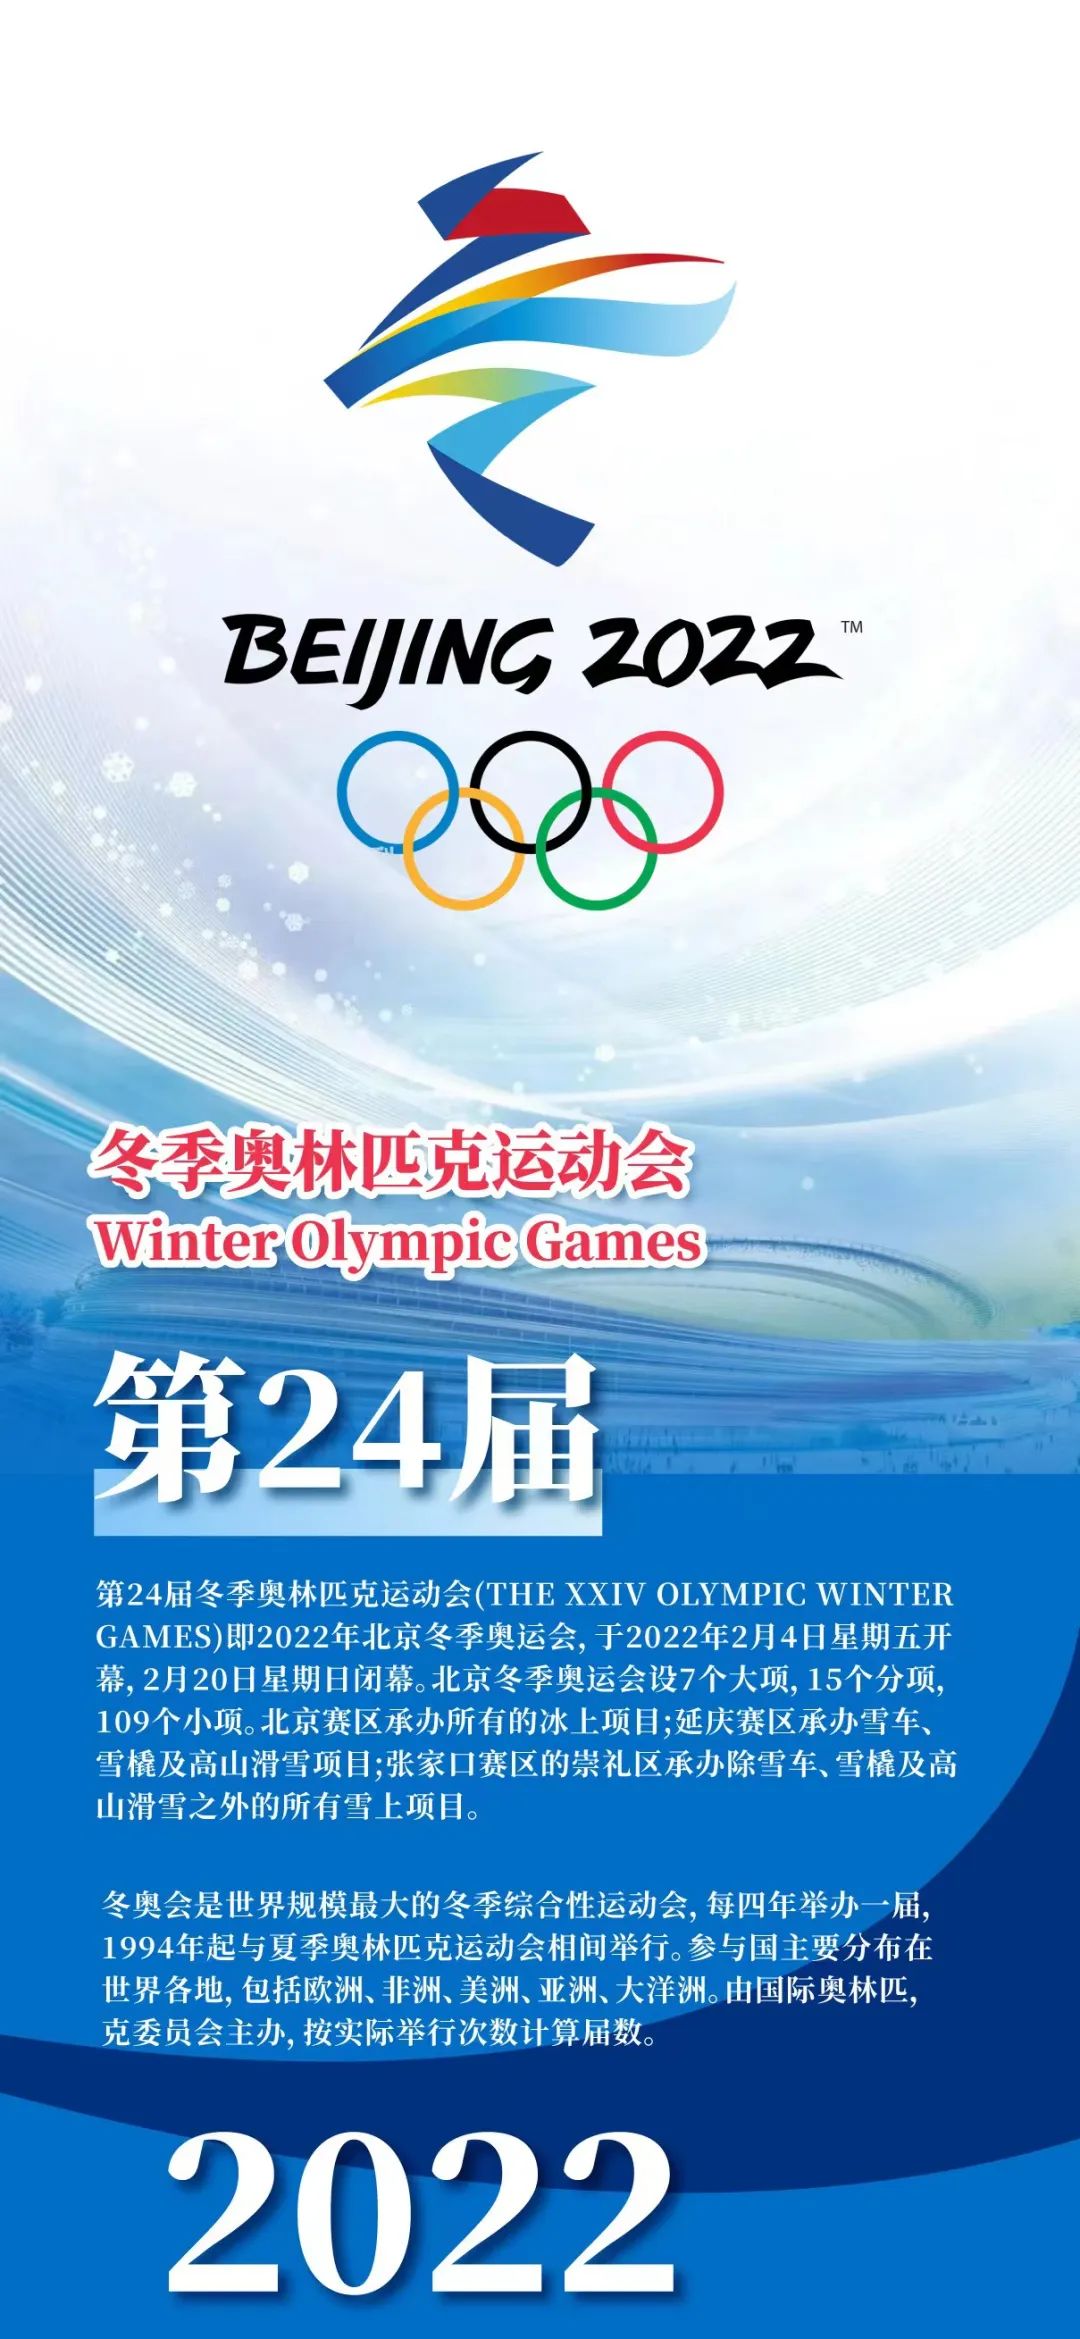 云南喜麻麻祝福2022北京冬奥会圆满成功